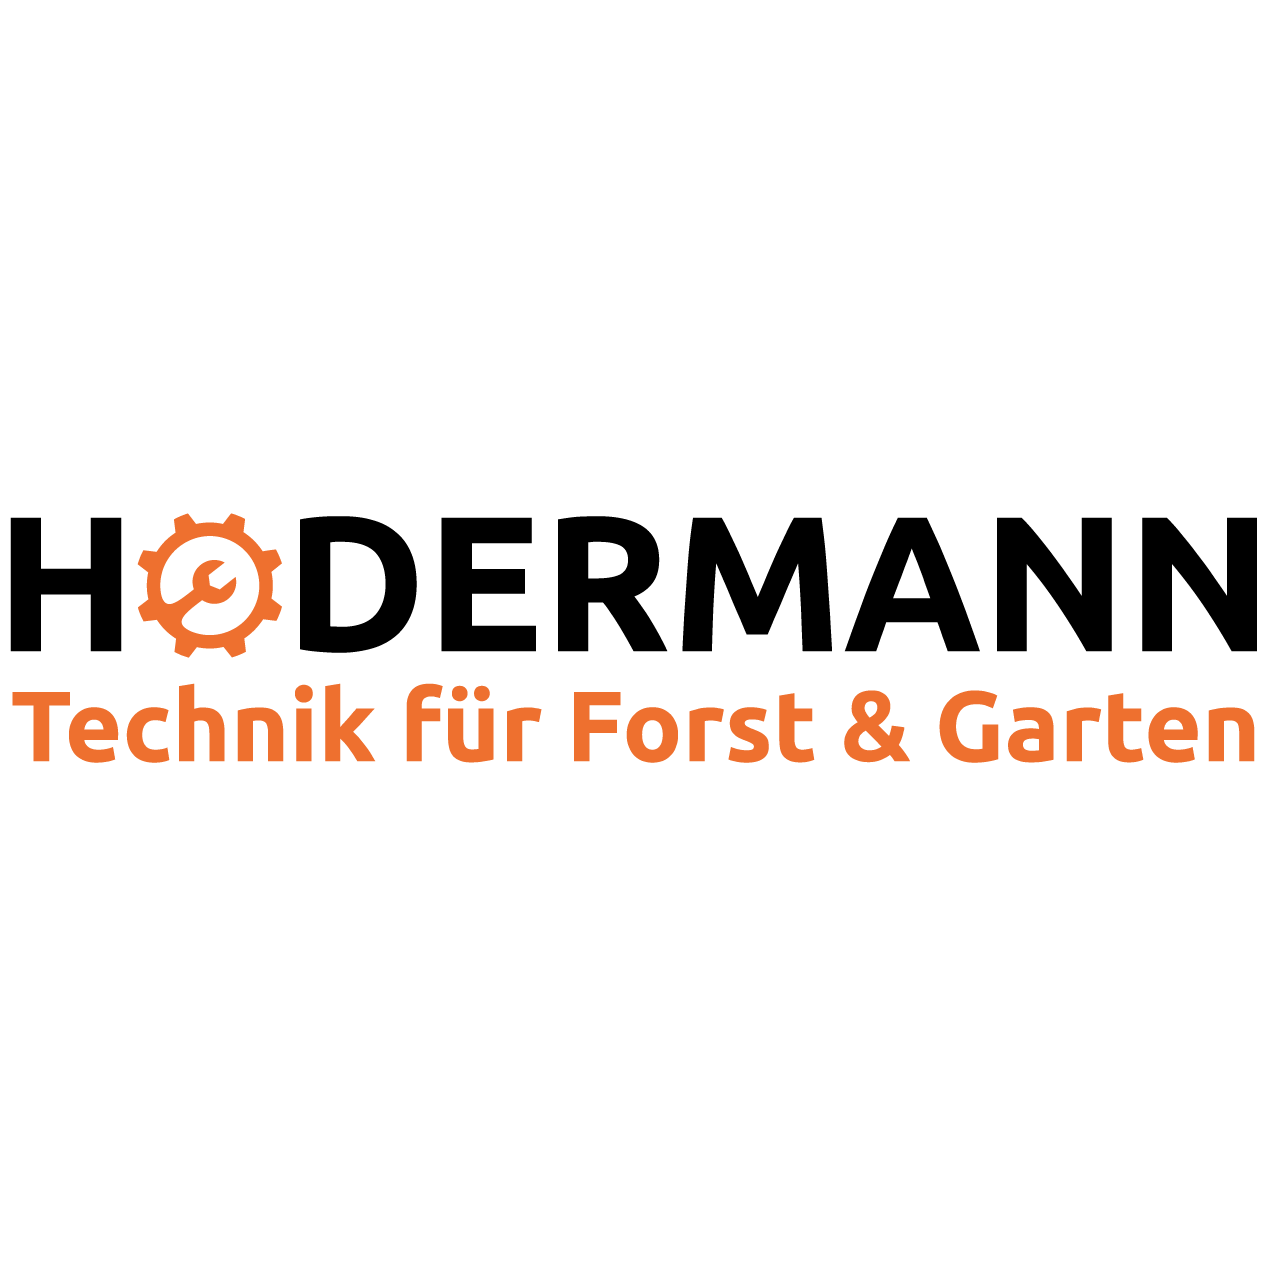 Logo Hodermann